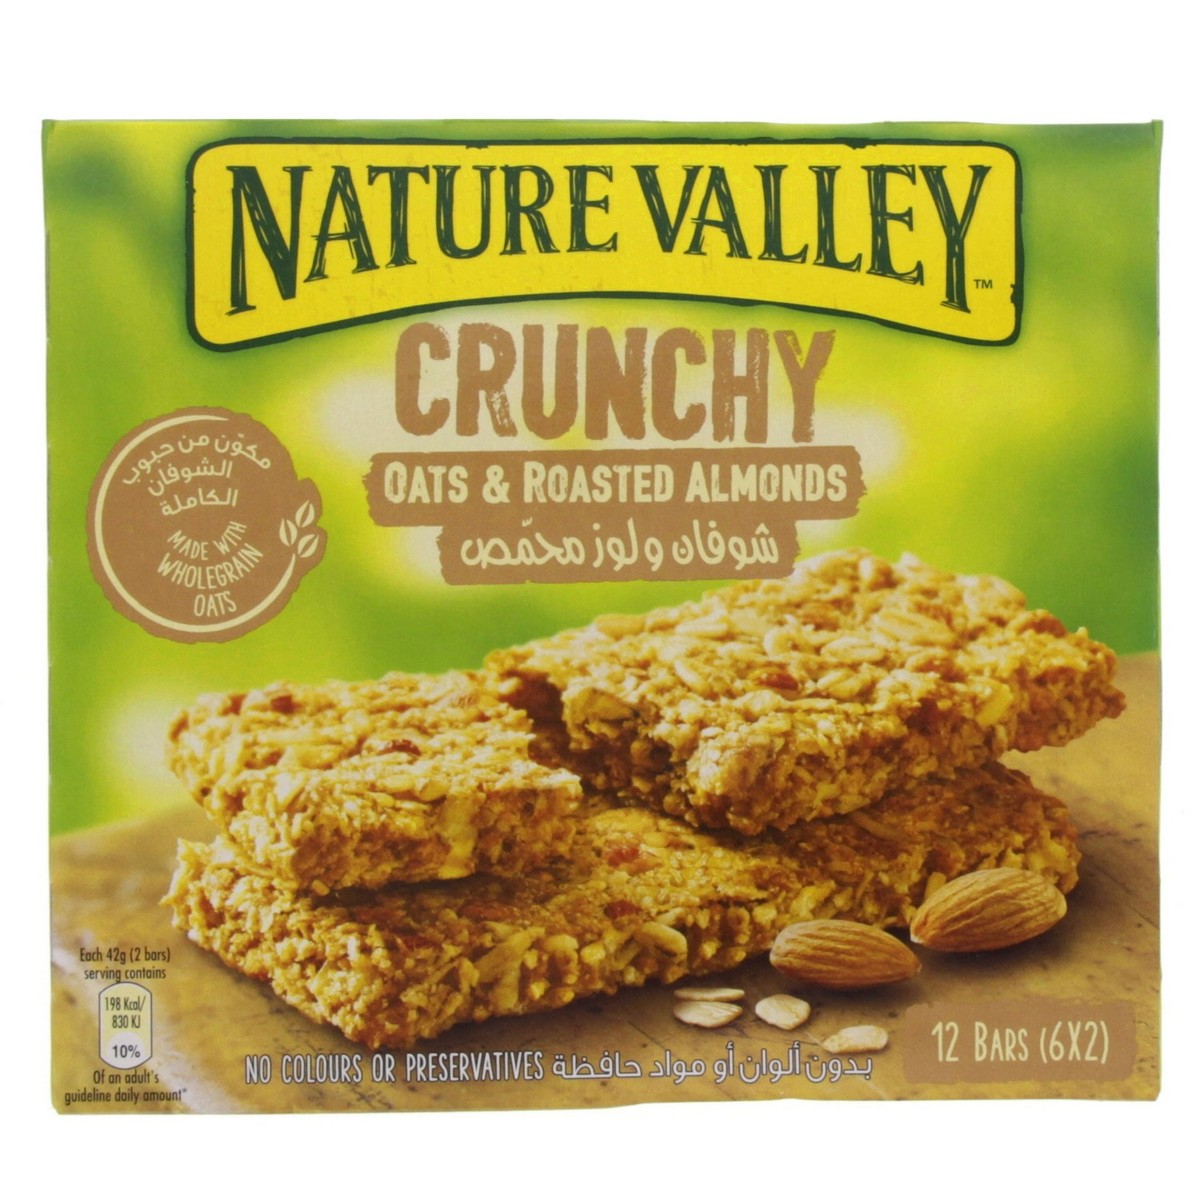 Autonom Desværre undervandsbåd Nature Valley Crunchy Granola Bar Oats & Roasted Almonds 6 x 42g | Cereal  Bars | Lulu KSA